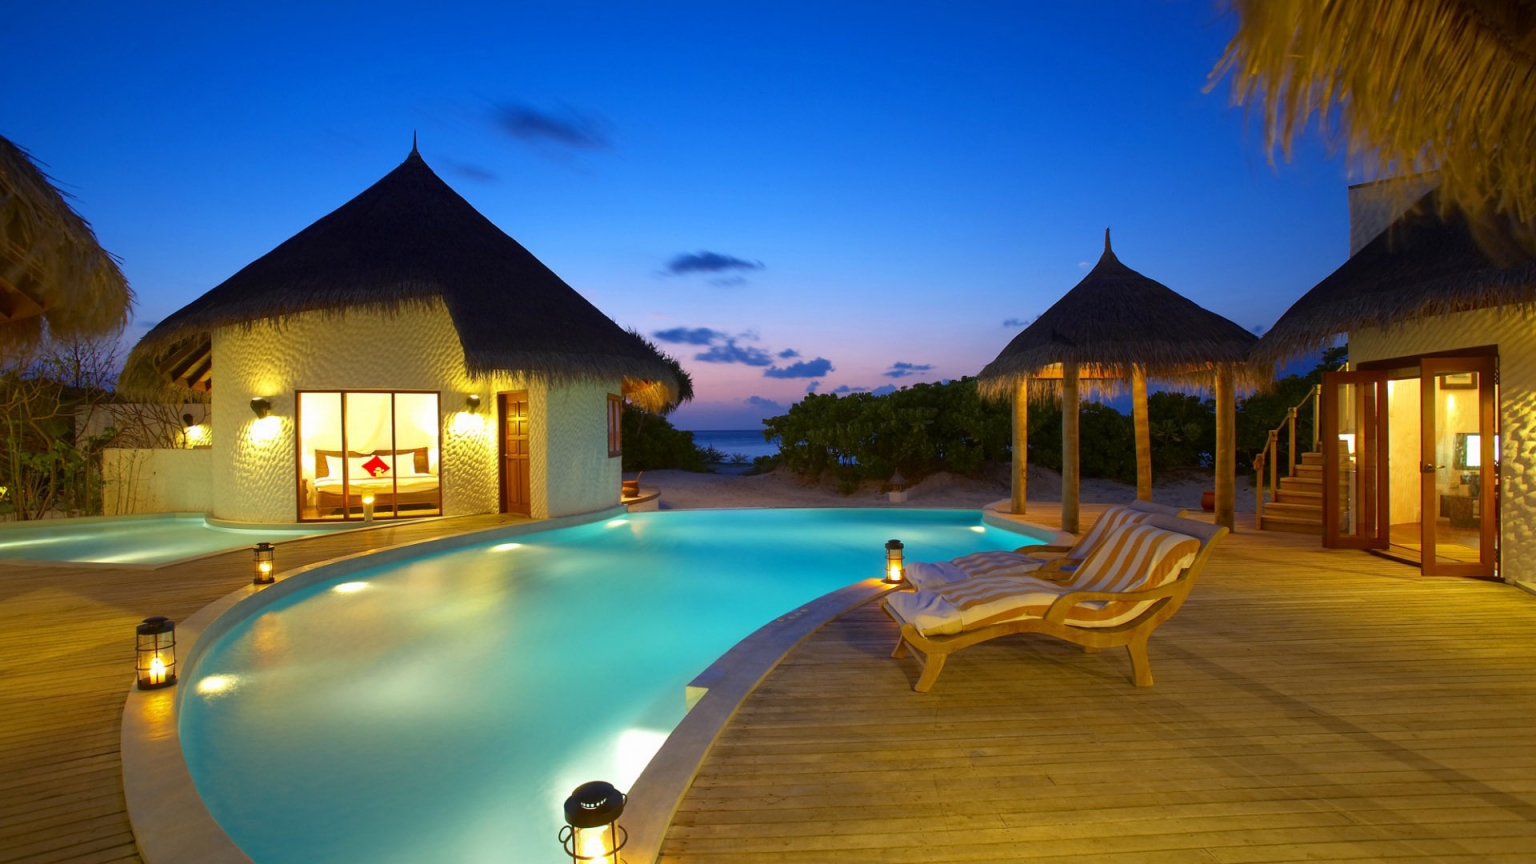 Maldives 5 Star Resort for 1536 x 864 HDTV resolution